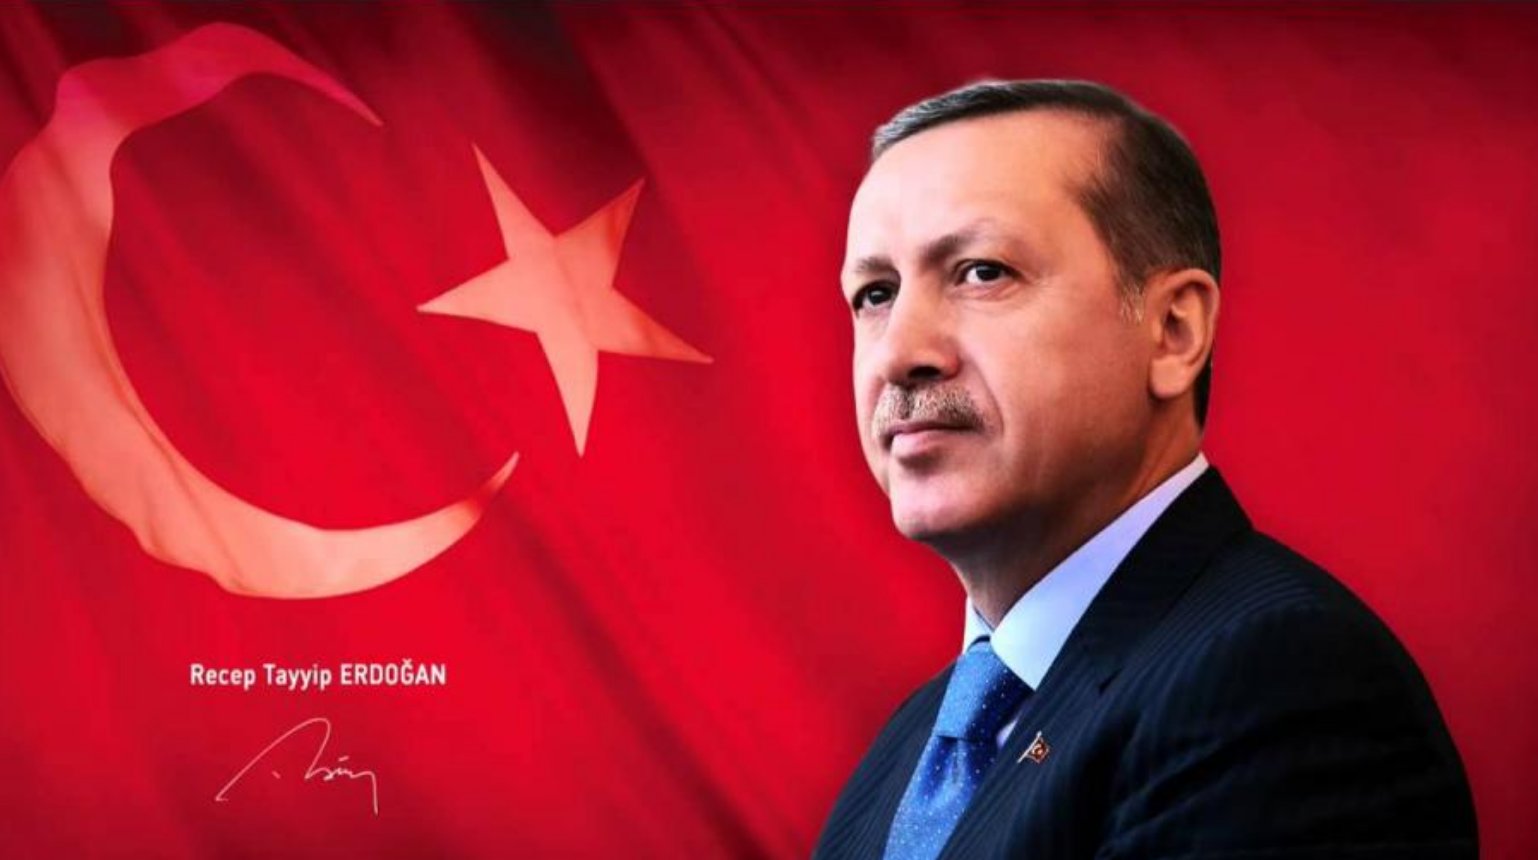 Erdogan: die Verlockung von Macht und nationaler Stärke